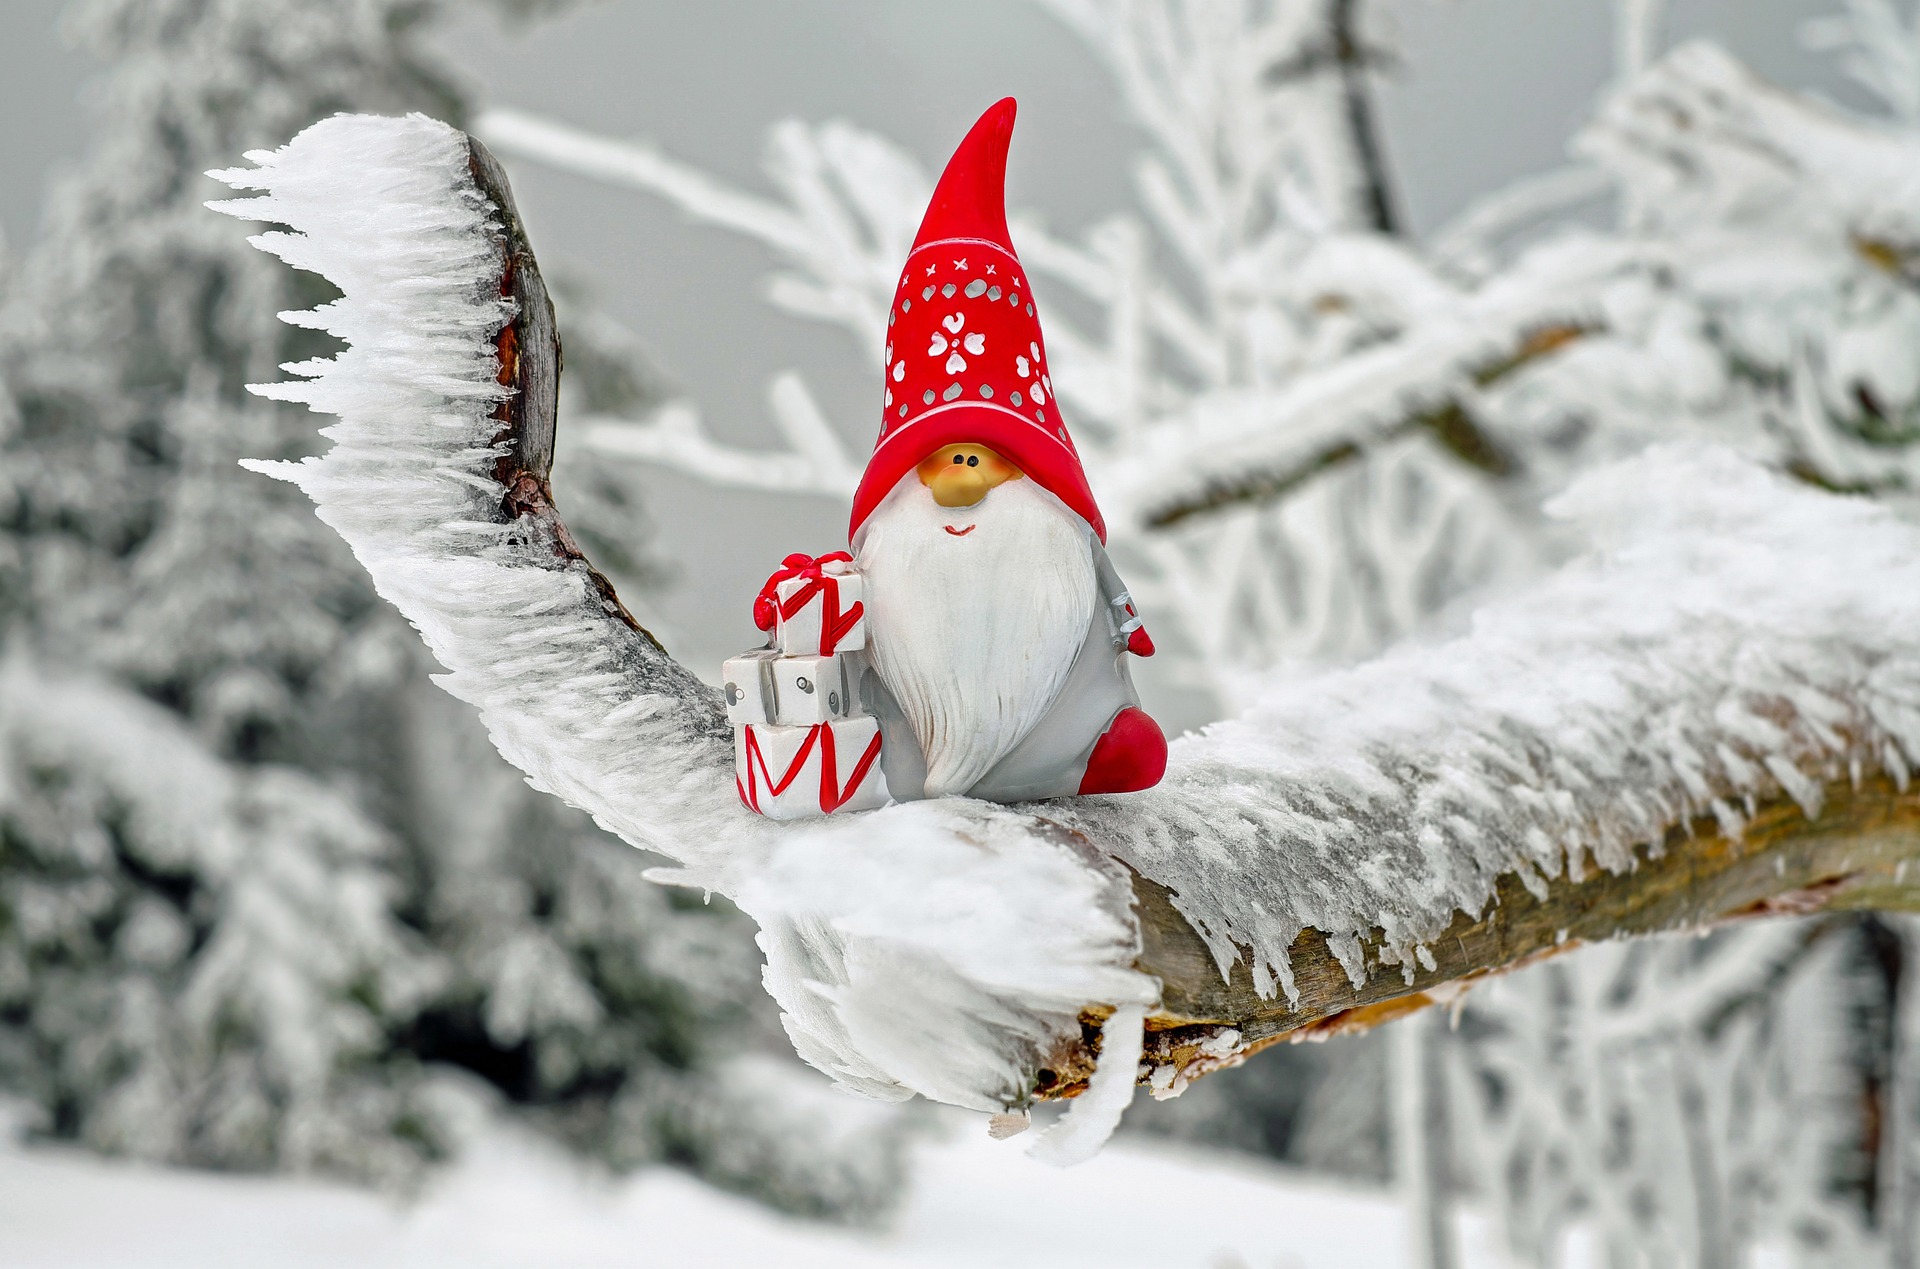 Das Foto zeigt einen kleine Nikolaus-Figur mit langem, weißen Bart und großer, roter Zipfelmütze, die auf einem vereisten Tannenzweig sitzt.